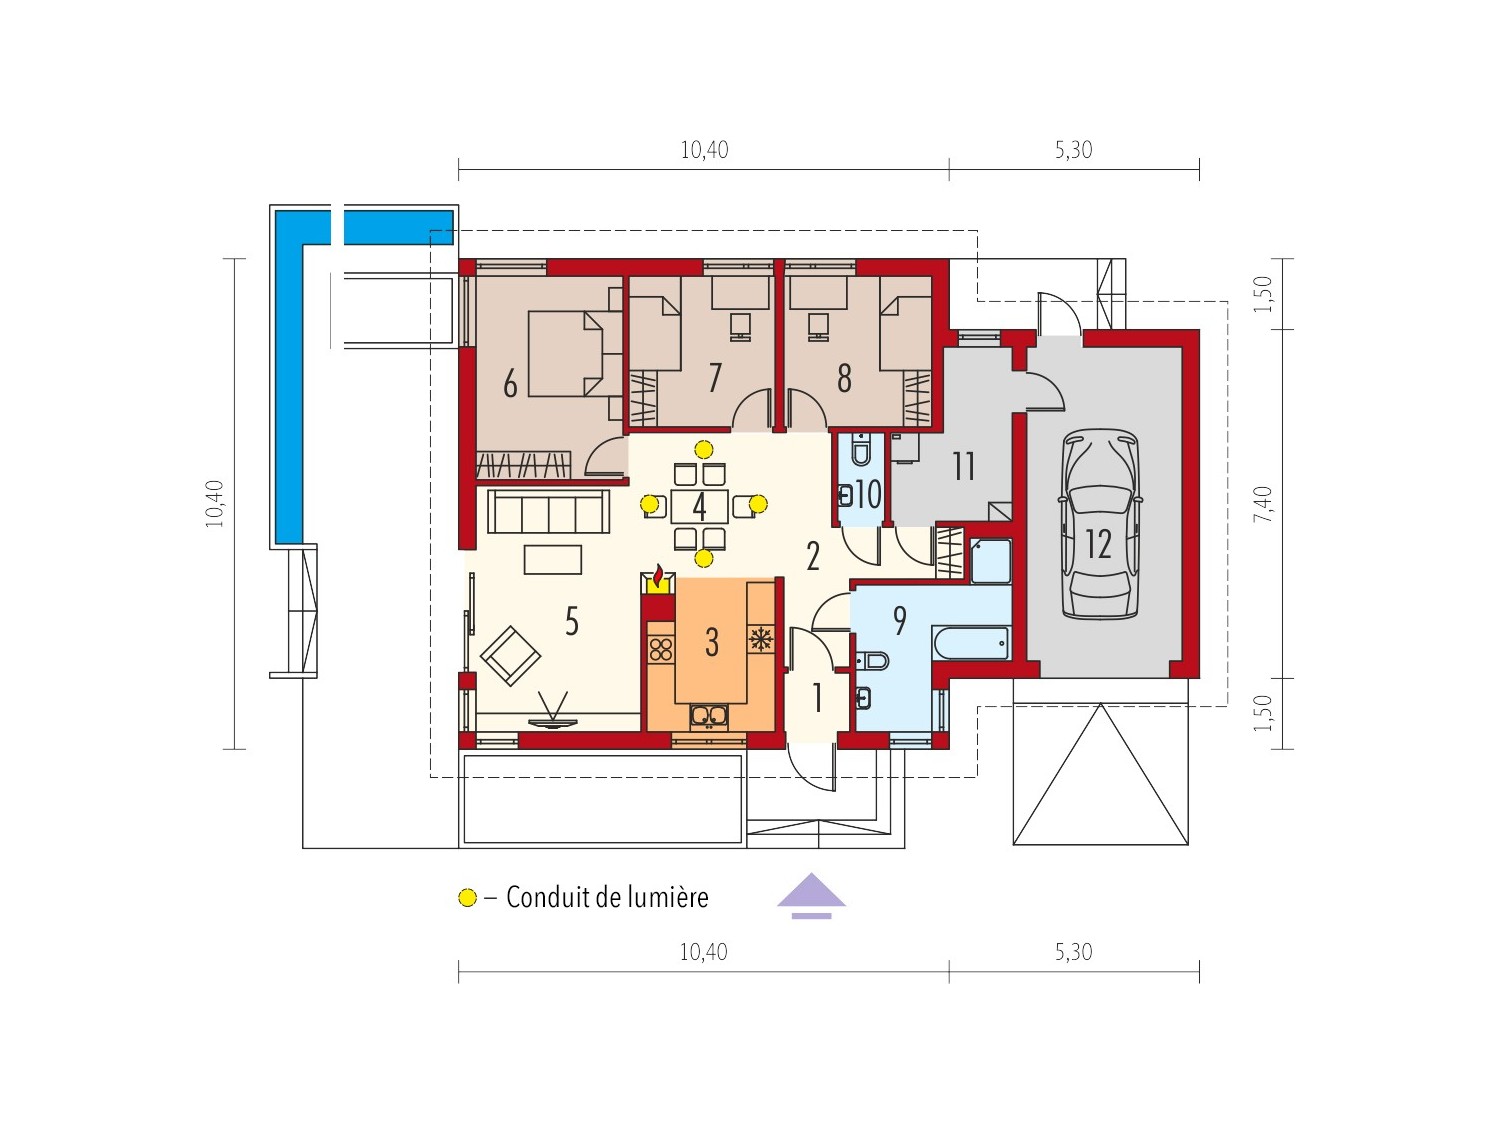 Maison en bois, kit ossature bois / plan "ANABELA G1" 97 m² / Permis de construire RT 2012